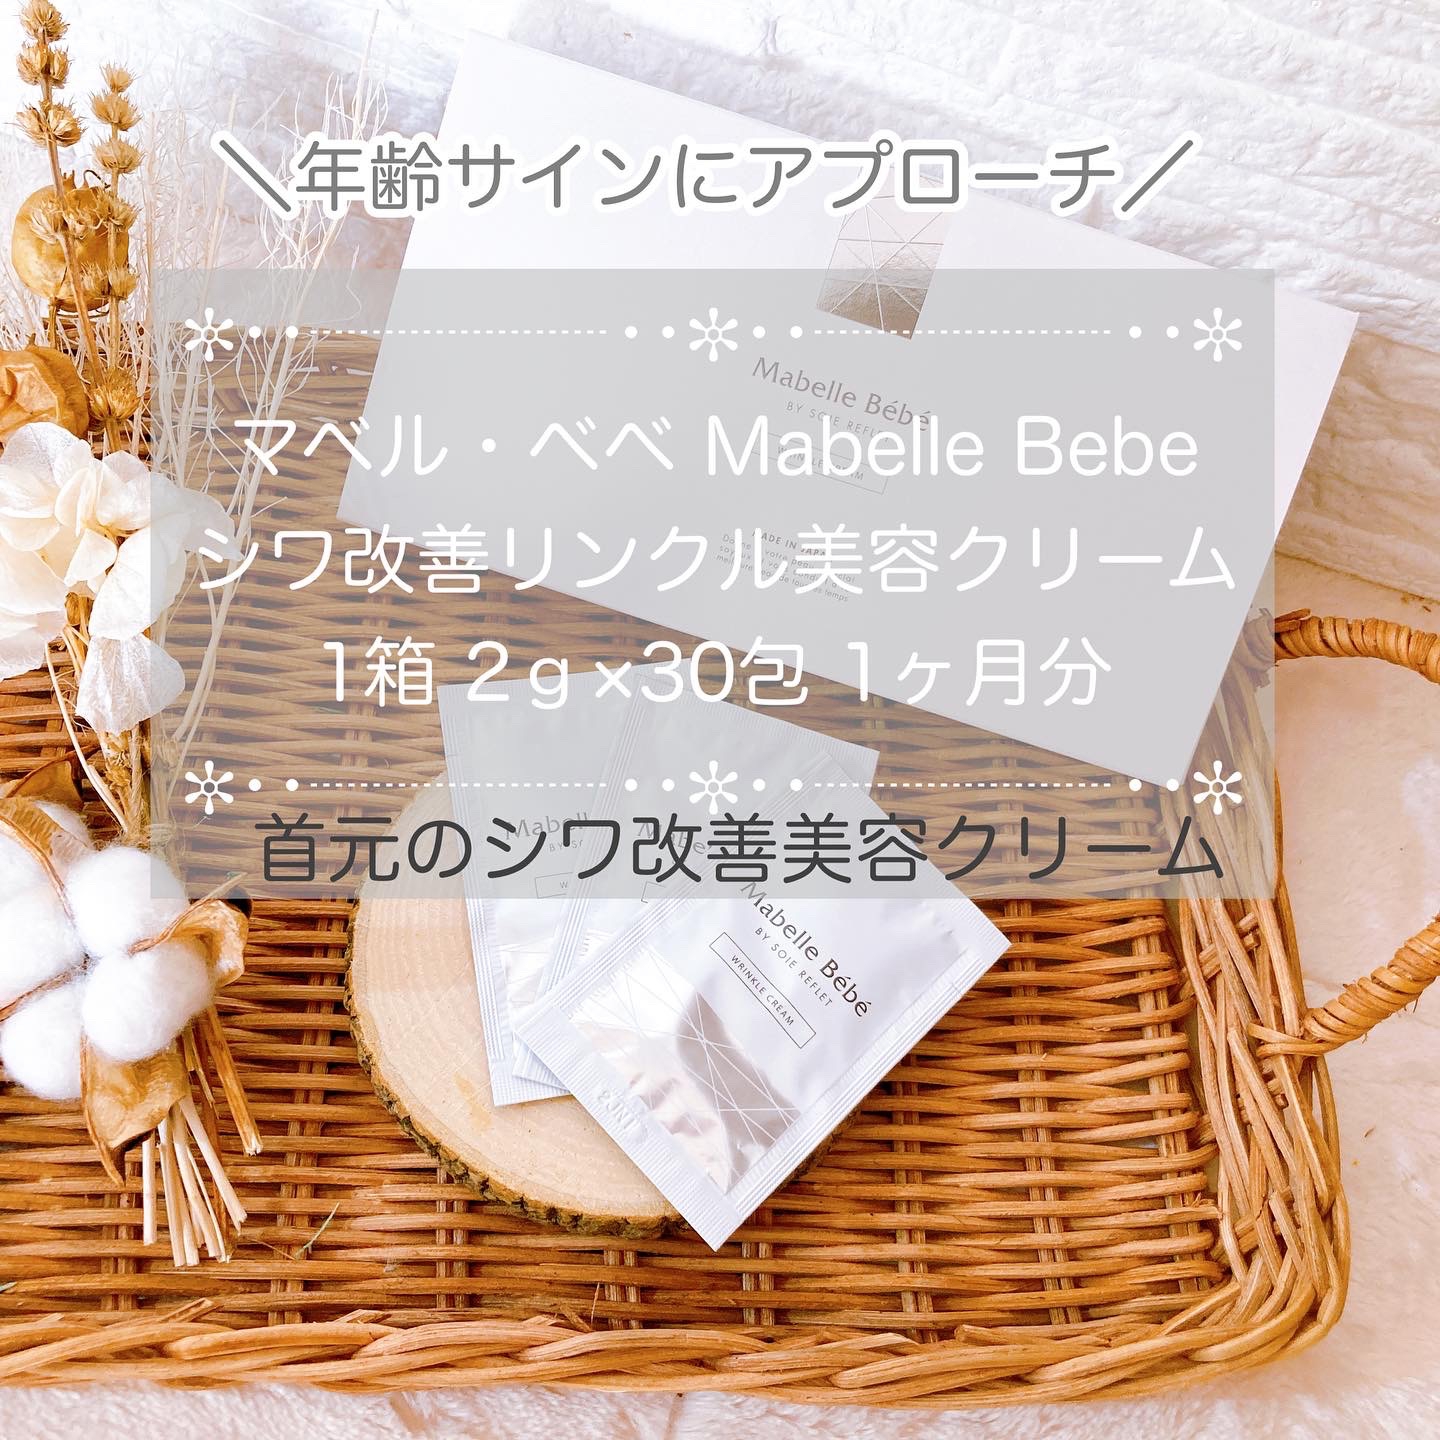 マベル・ベベ Mabelle Bebeシワ改善リンクル美容クリーム1箱 2ｇ×30包 1ヶ月分を使ったメグさんのクチコミ画像1